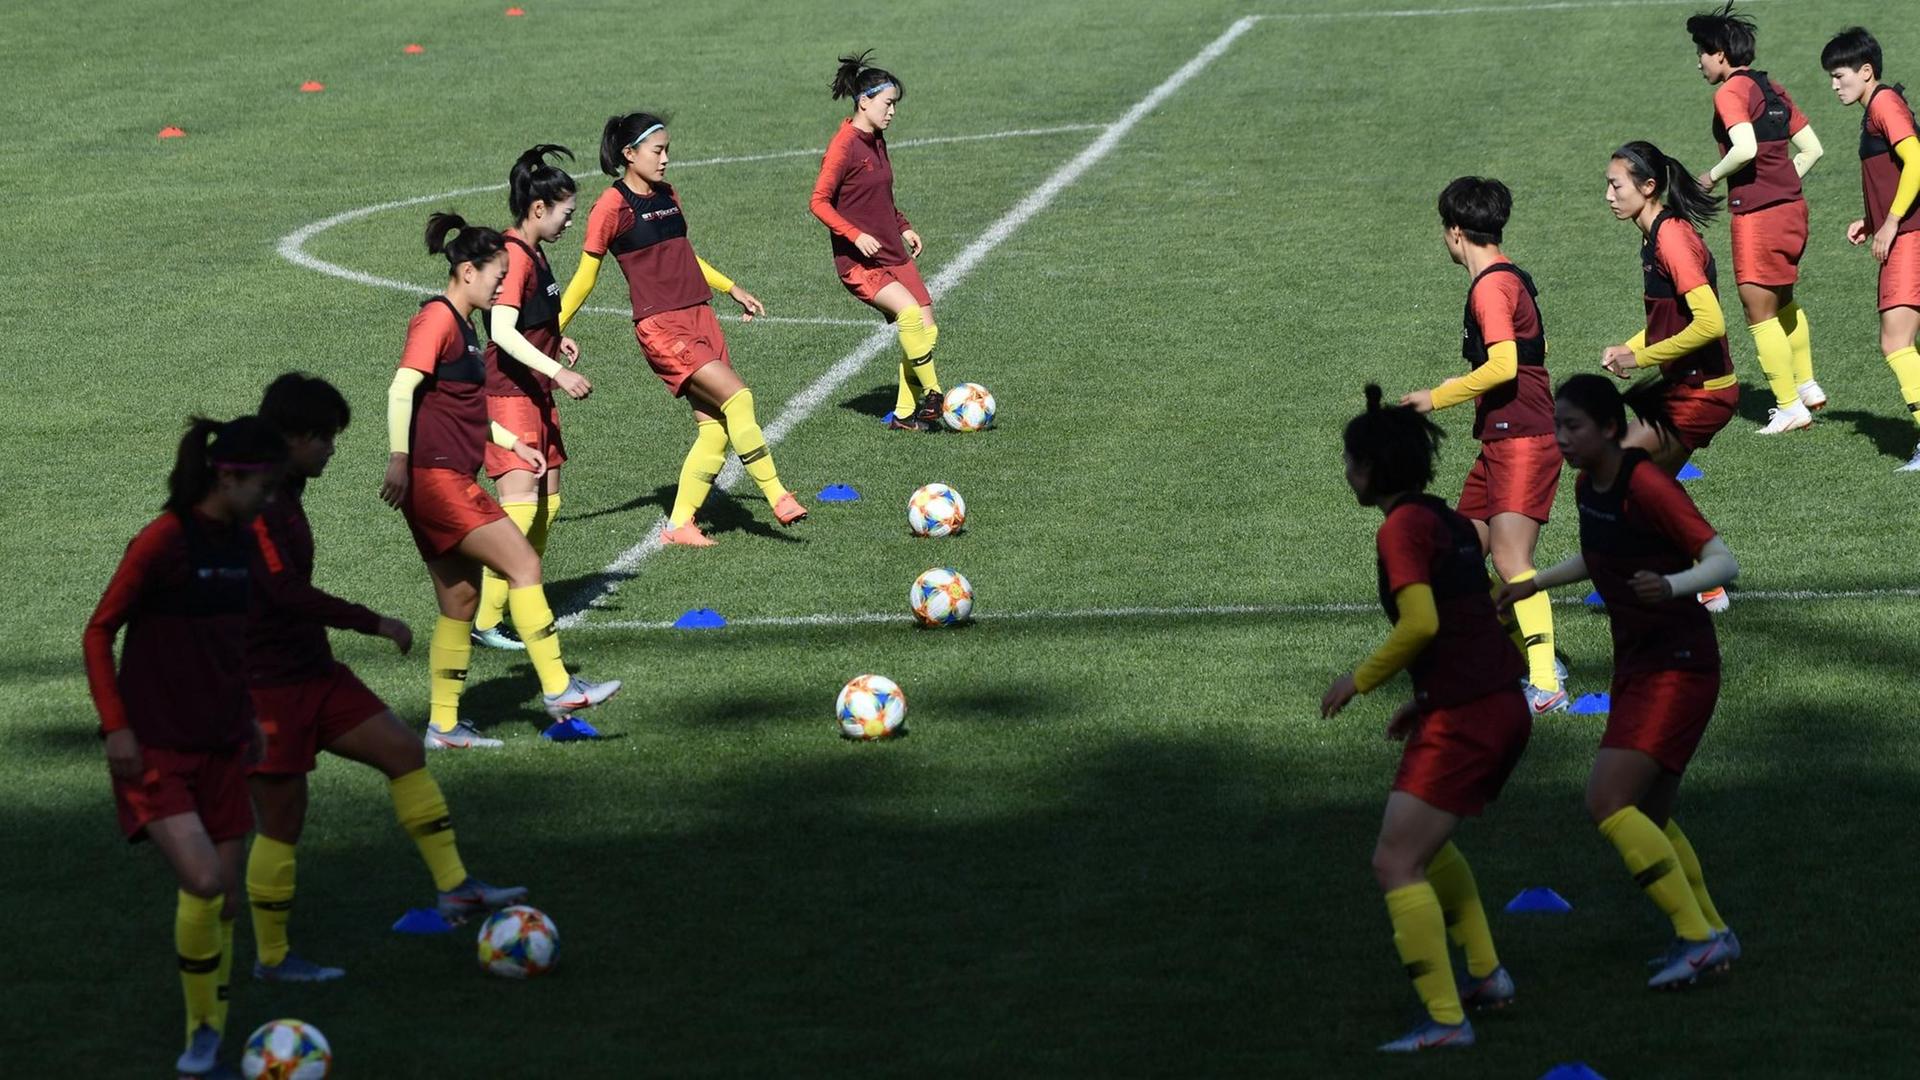 Spielerinnen der chinesischen Fußball-Nationalmannschaft während eines Trainings in Peking.